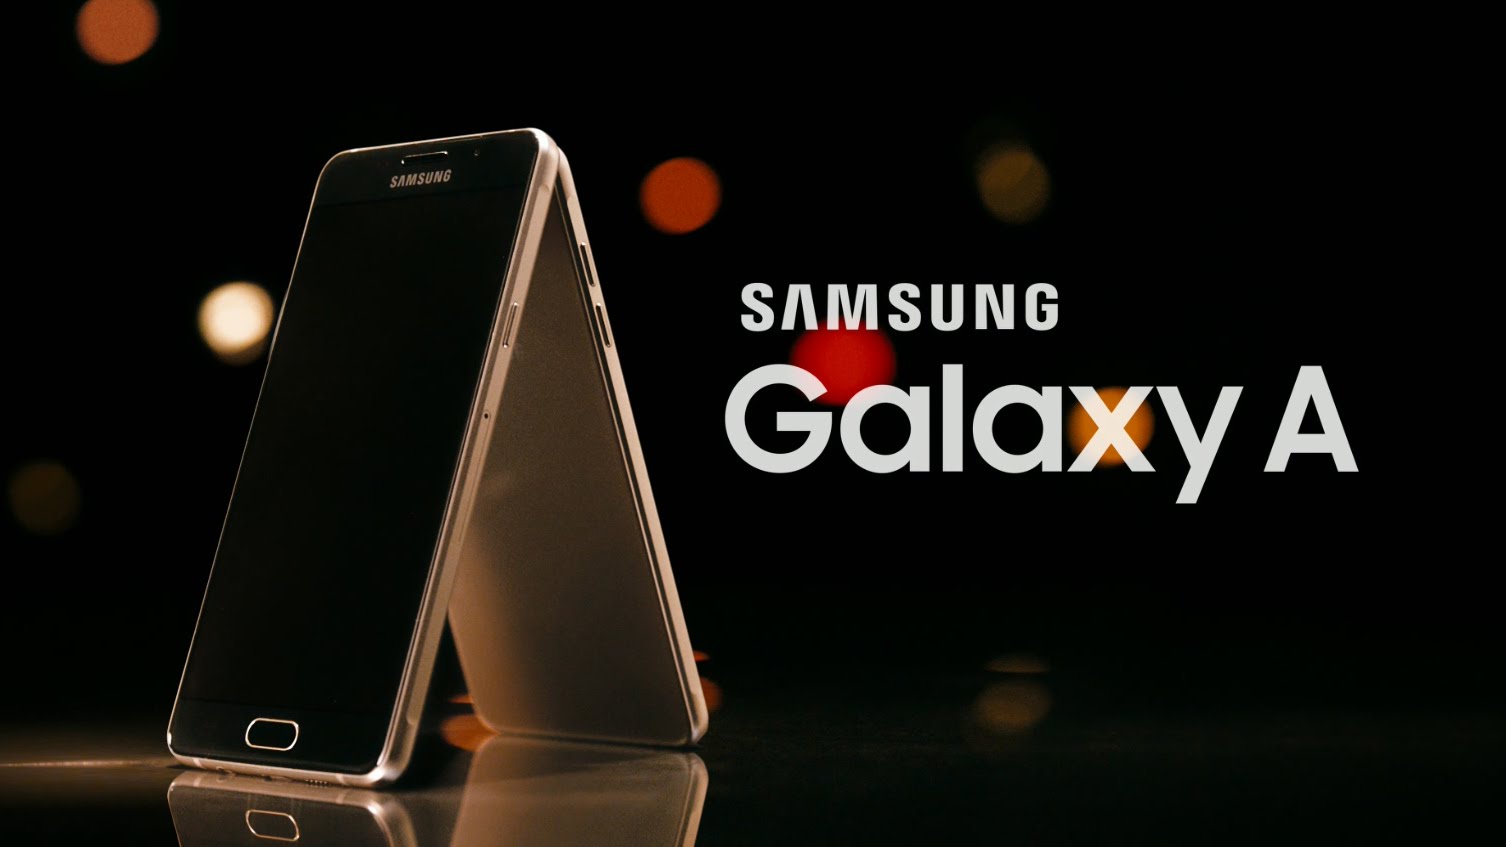 Samsung Galaxy A 2017 sẽ được công bố vào 5/1